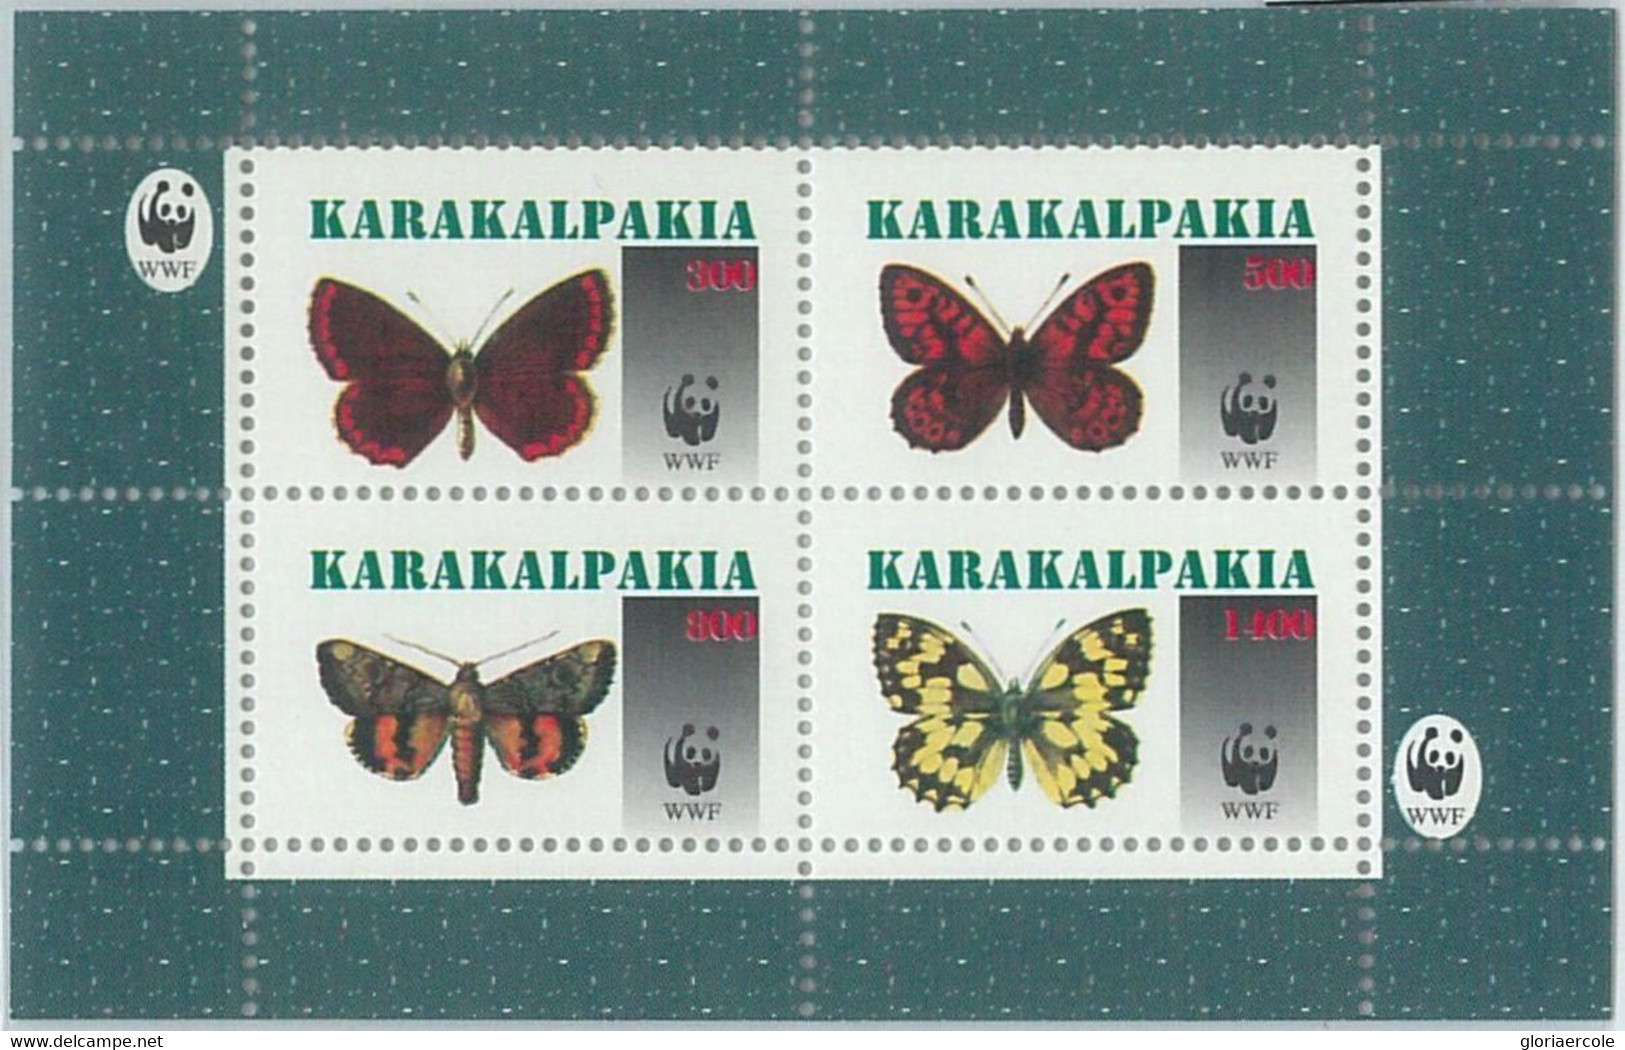 M2001 - RUSSIAN STATE, SHEET: WWF, Butterflies, Insects  R04.22 - Gebruikt